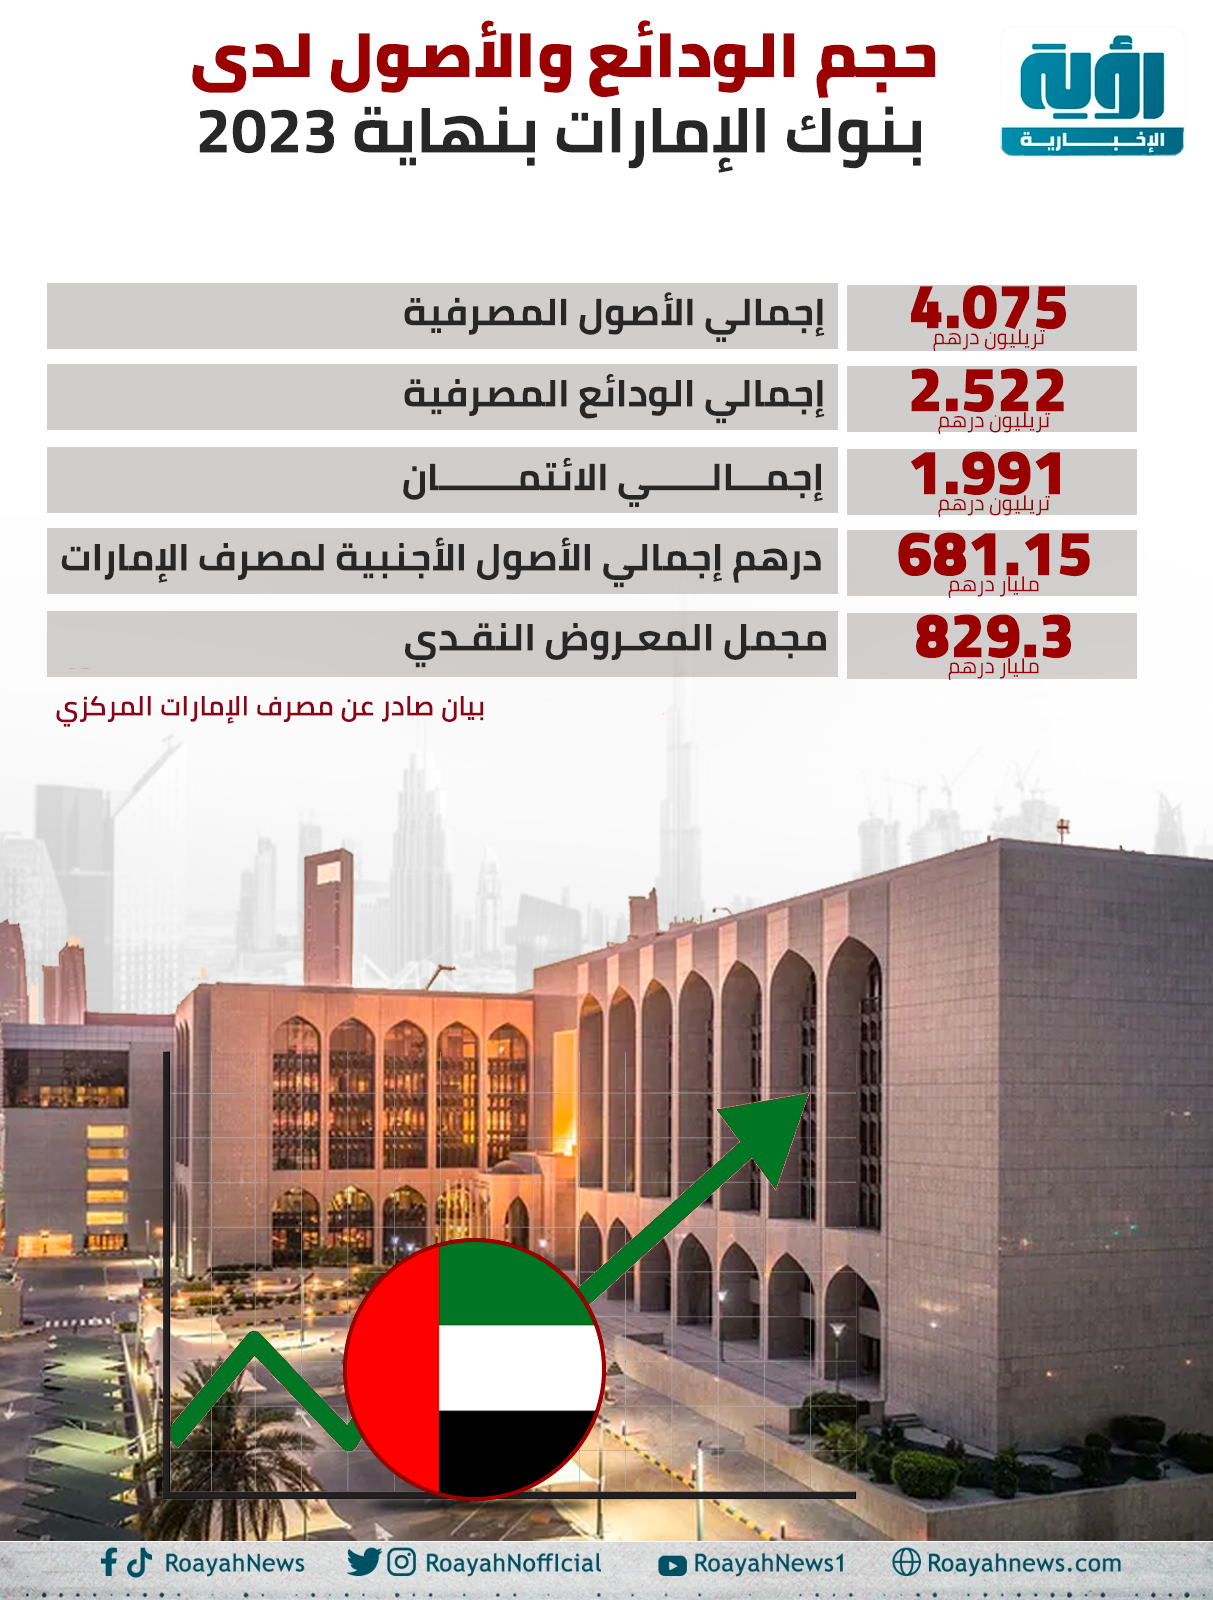 حجم الودائع والأصول لدى بنوك الإمارات بنهاية 2023